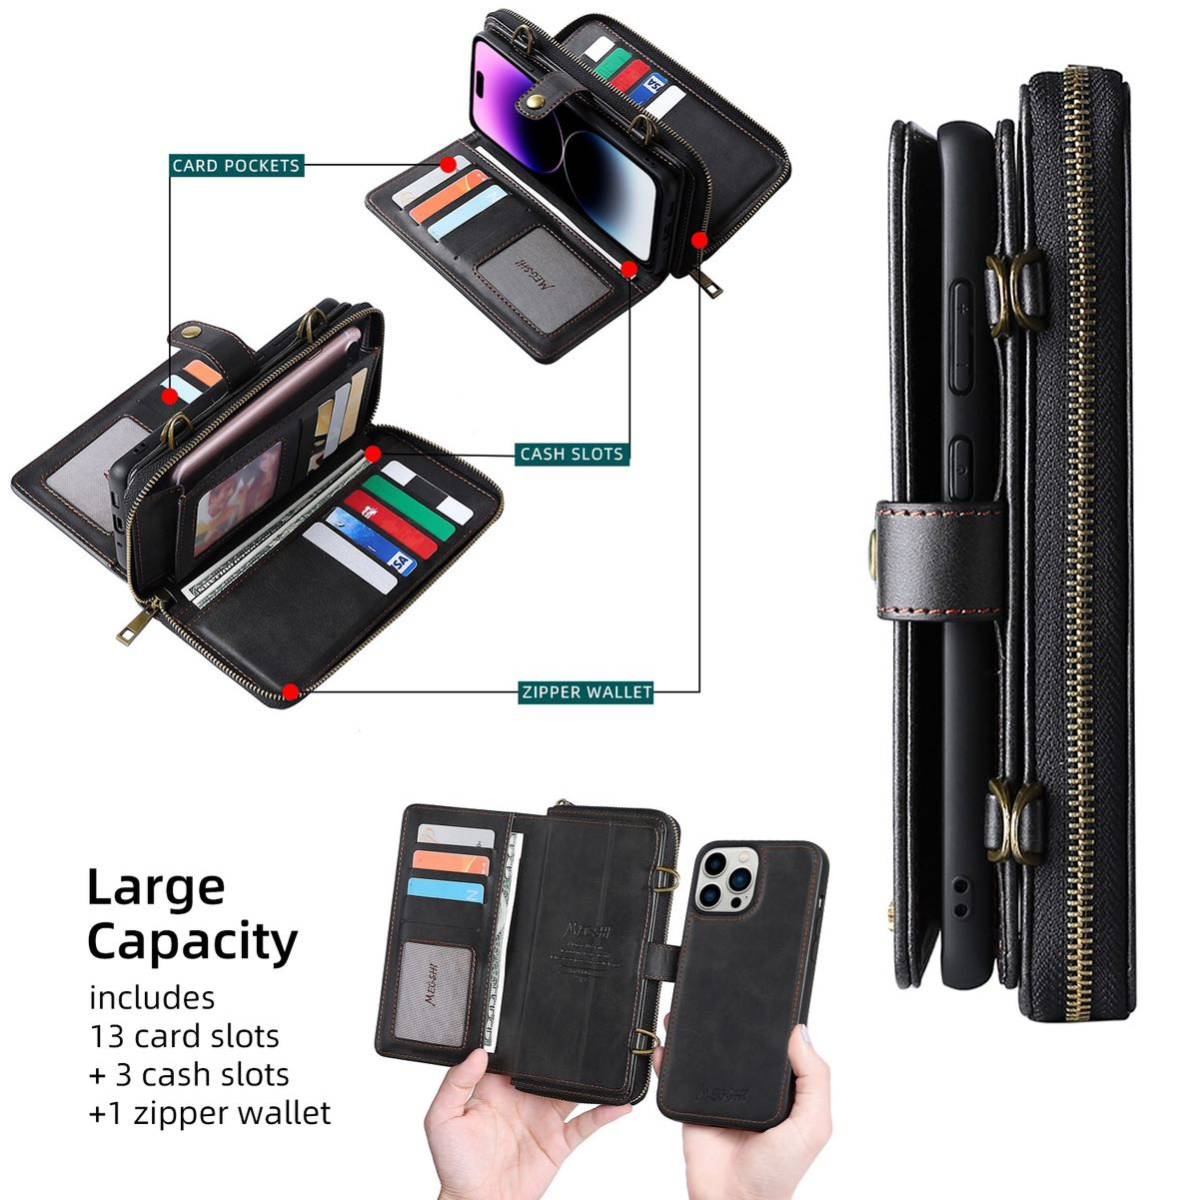 iPhone 14 pro max レザーケース アイフォン14 プロ マックス ショルダーケース カード収納 財布型 ストラップ付き 肩掛け